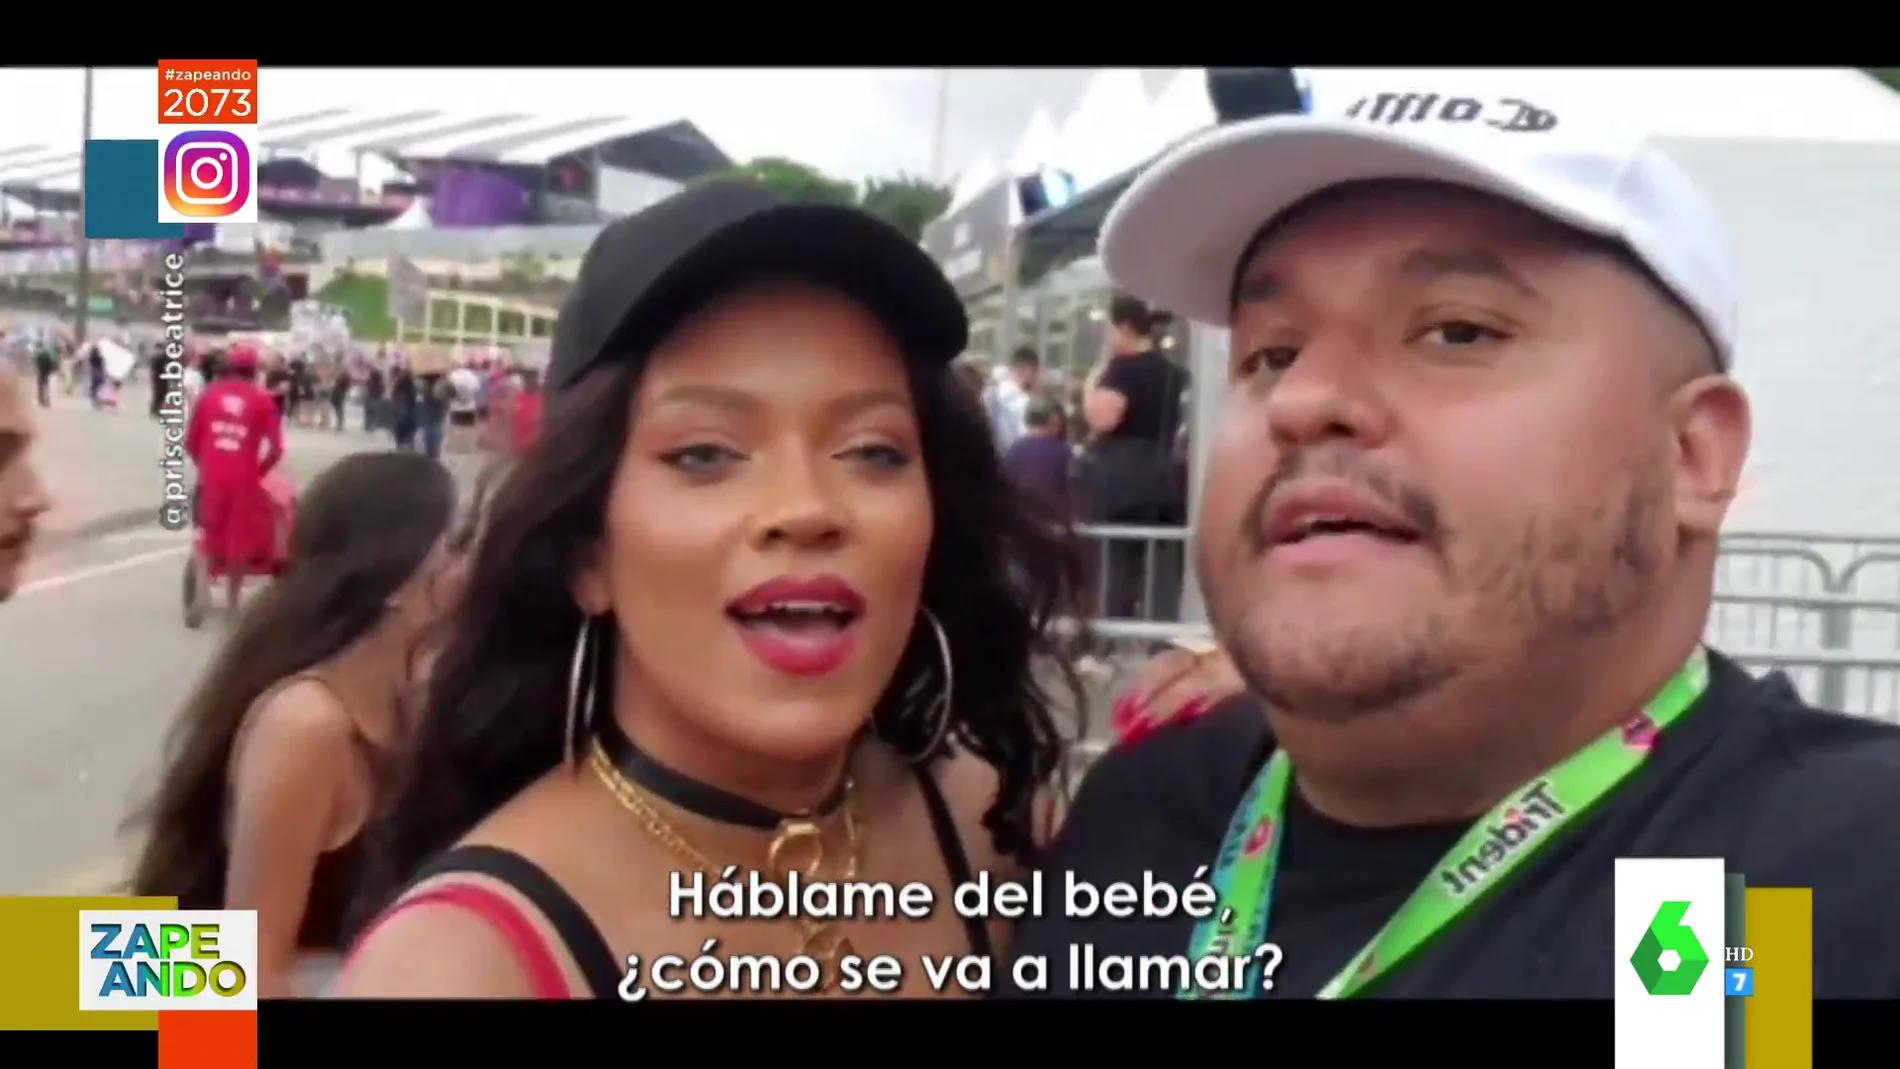 El espectacular parecido de una mujer brasileña con Rihanna que provoca confusiones entre sus propios fans